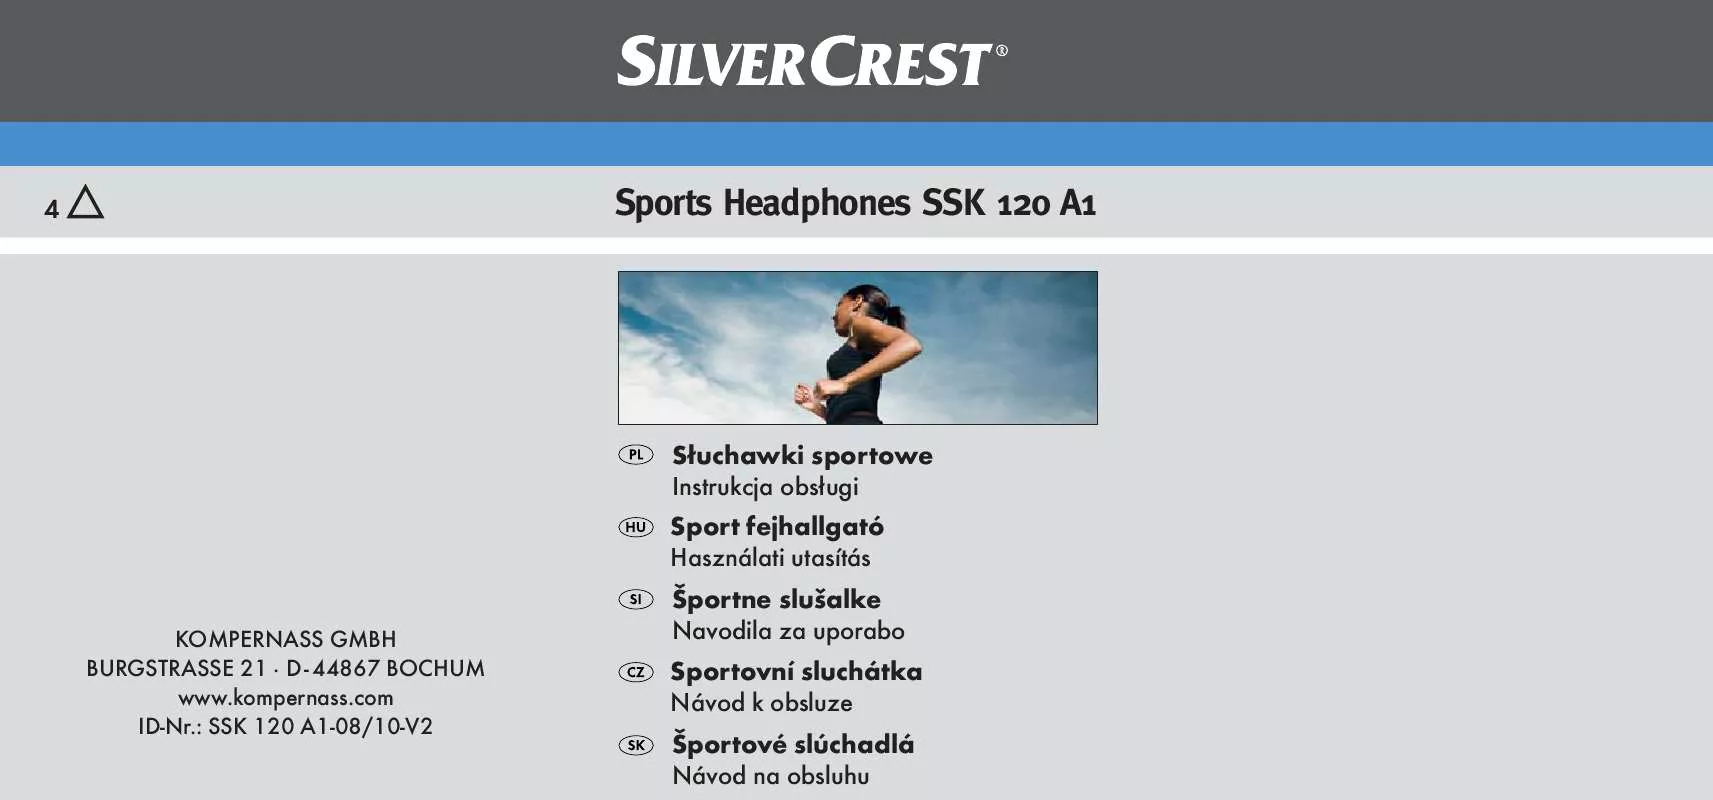 Mode d'emploi SILVERCREST SSK 120 A1 SPORTS HEADPHONES